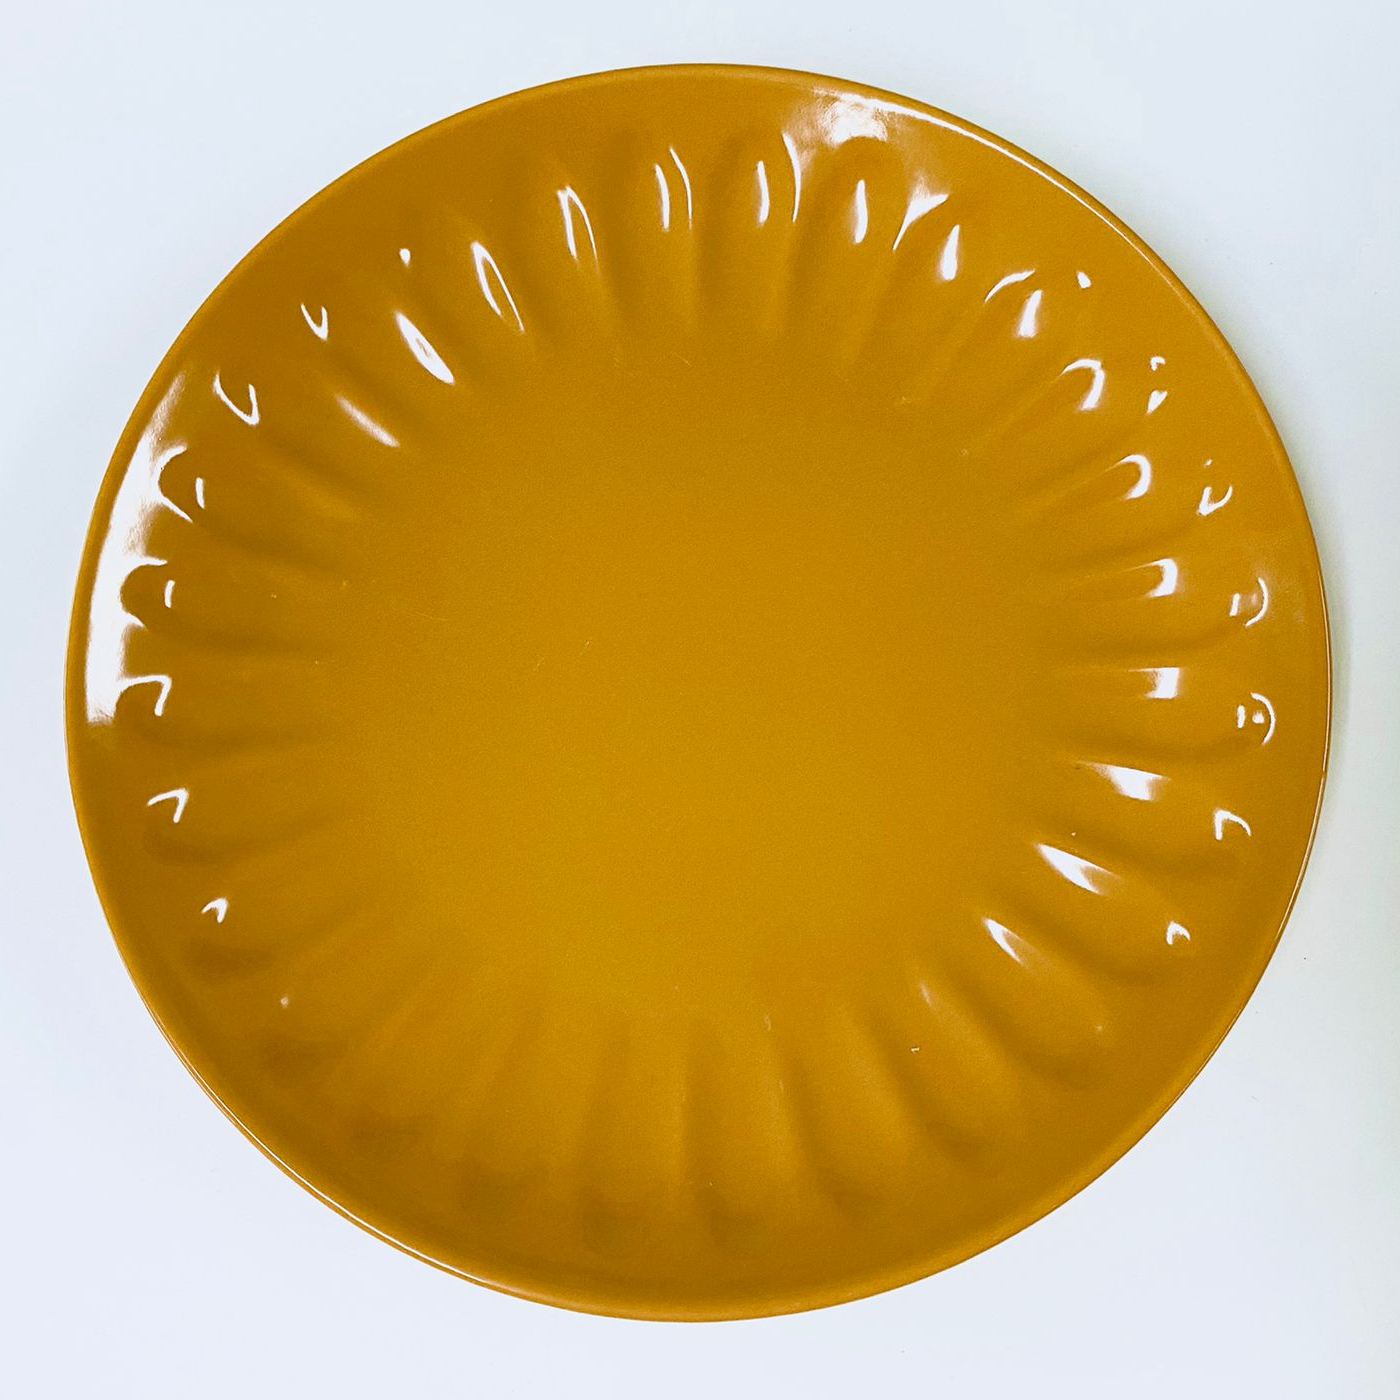 тарелка керамическая 27см 002459 (Турция)